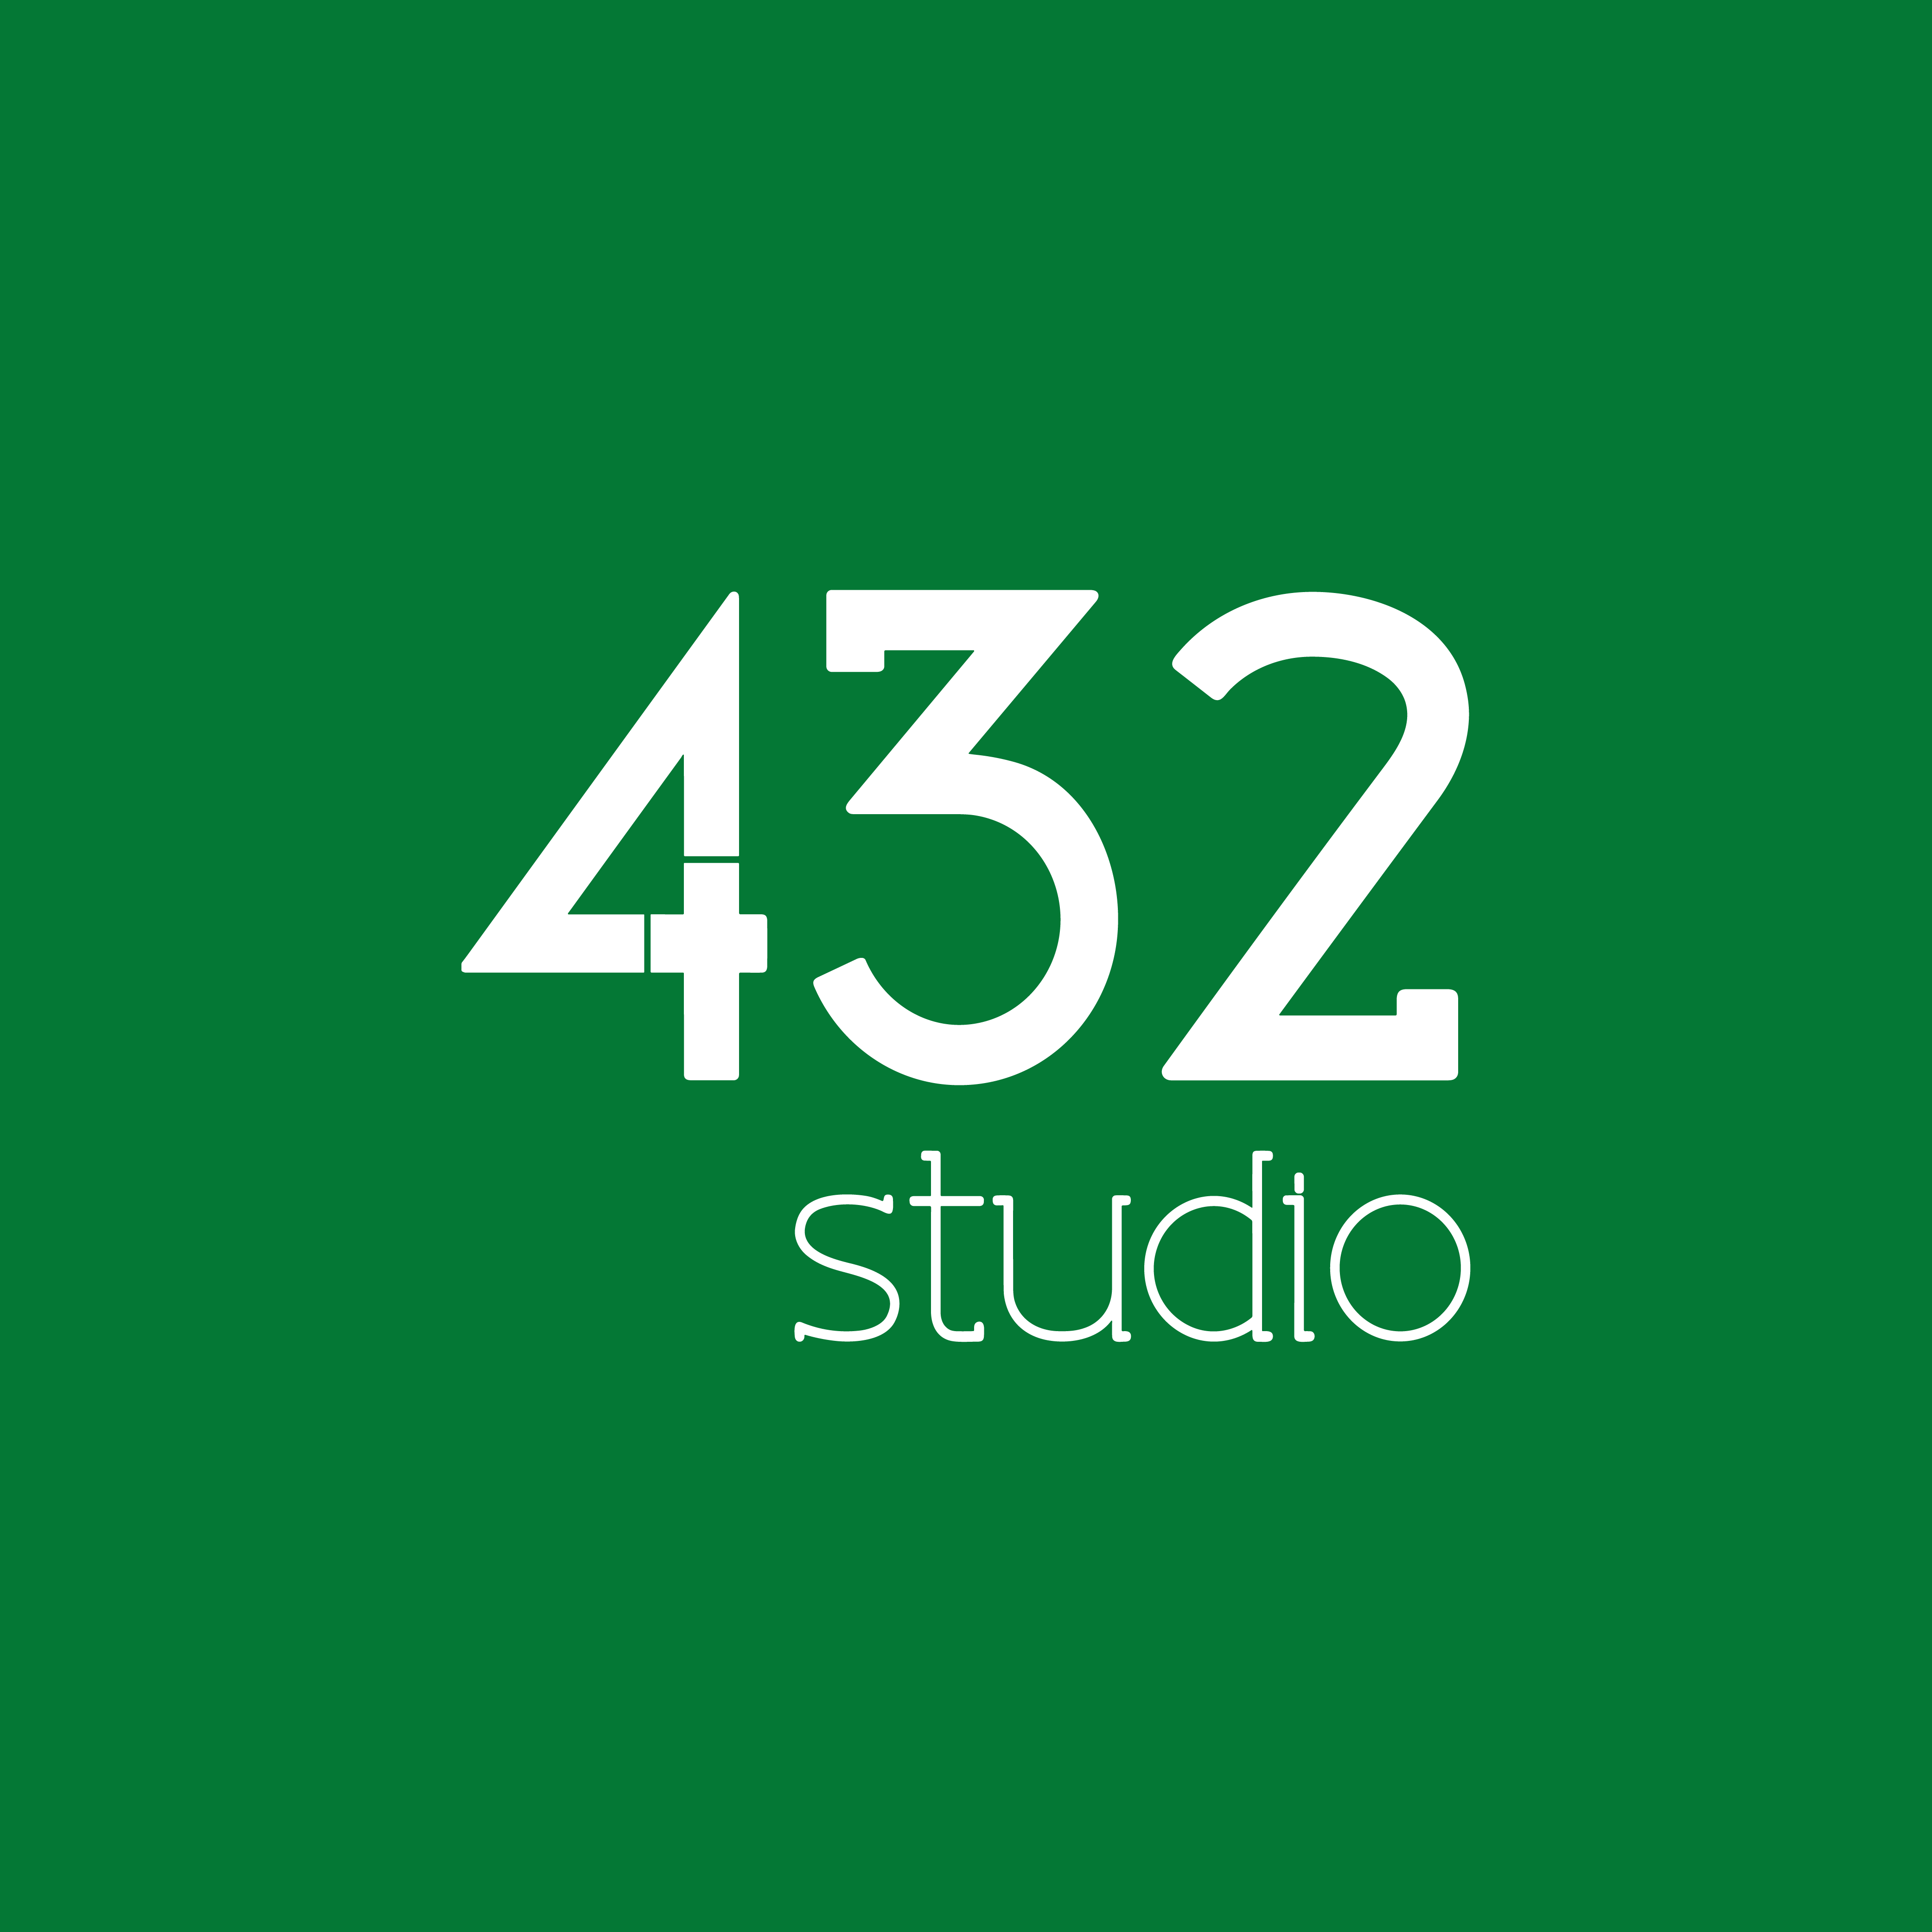 Studio-432